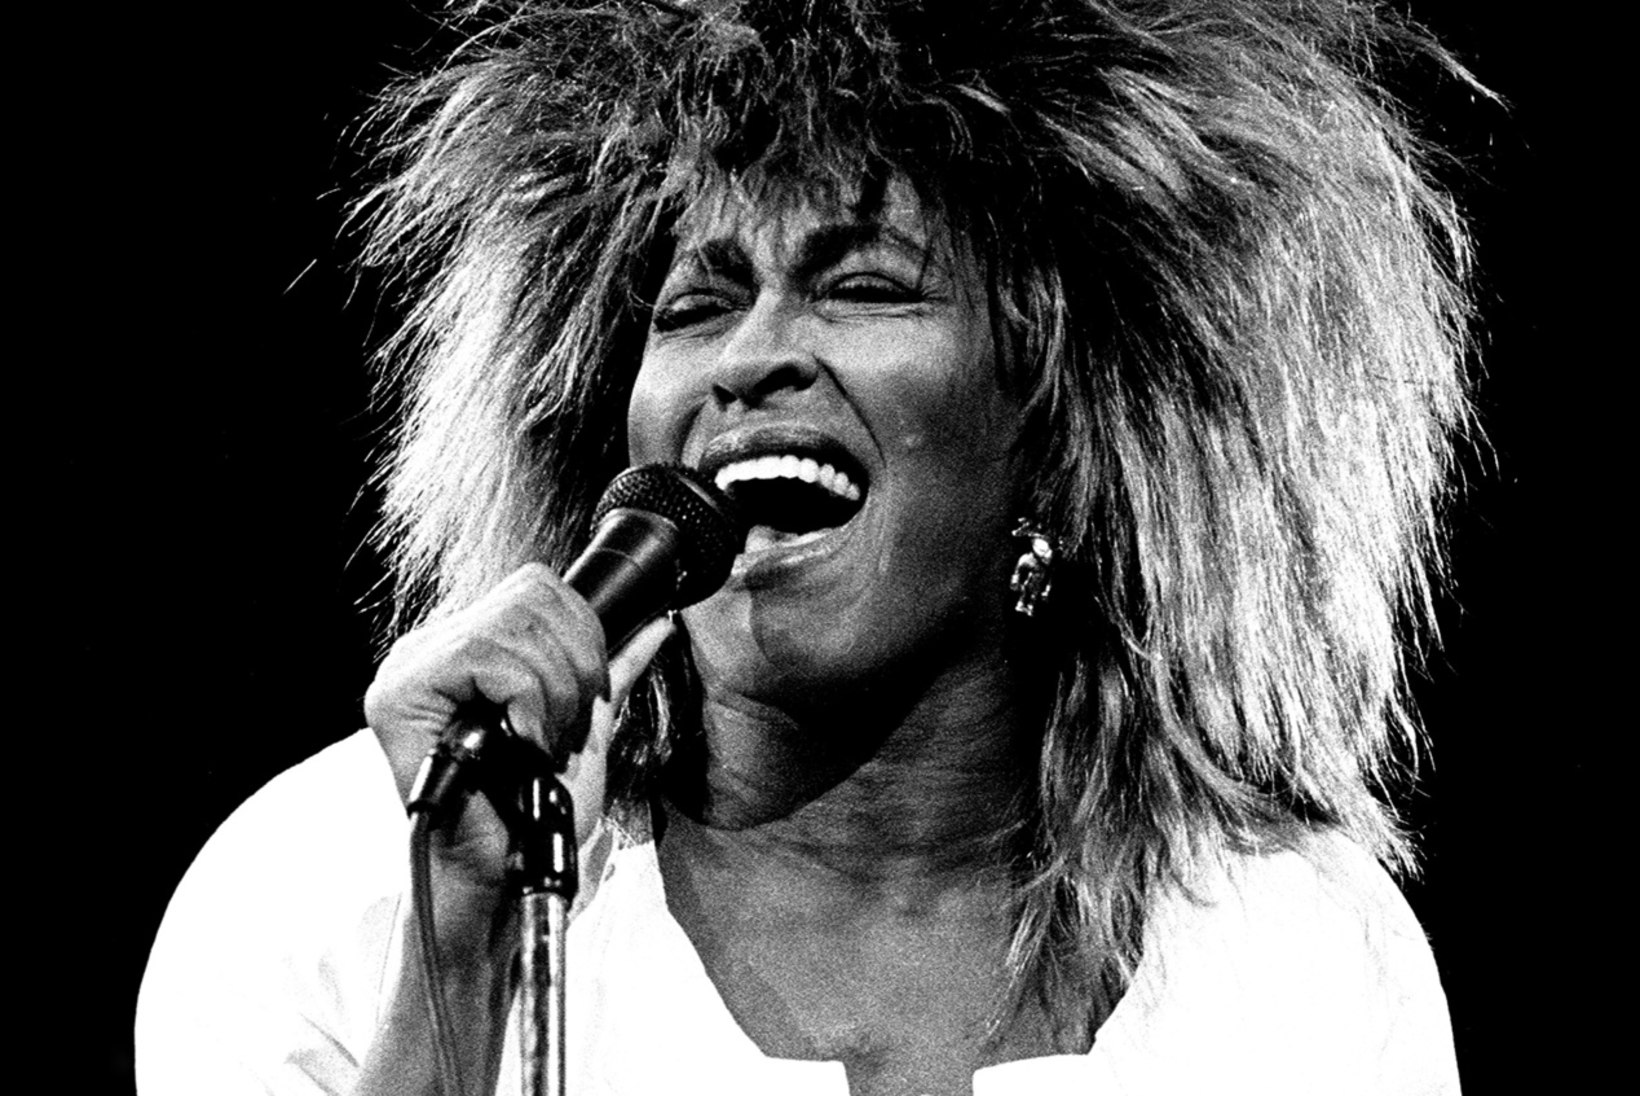 SIMPLY THE BEST: fööniksina tuhast tõusnud Tina Turner tiivustas kogu maailma